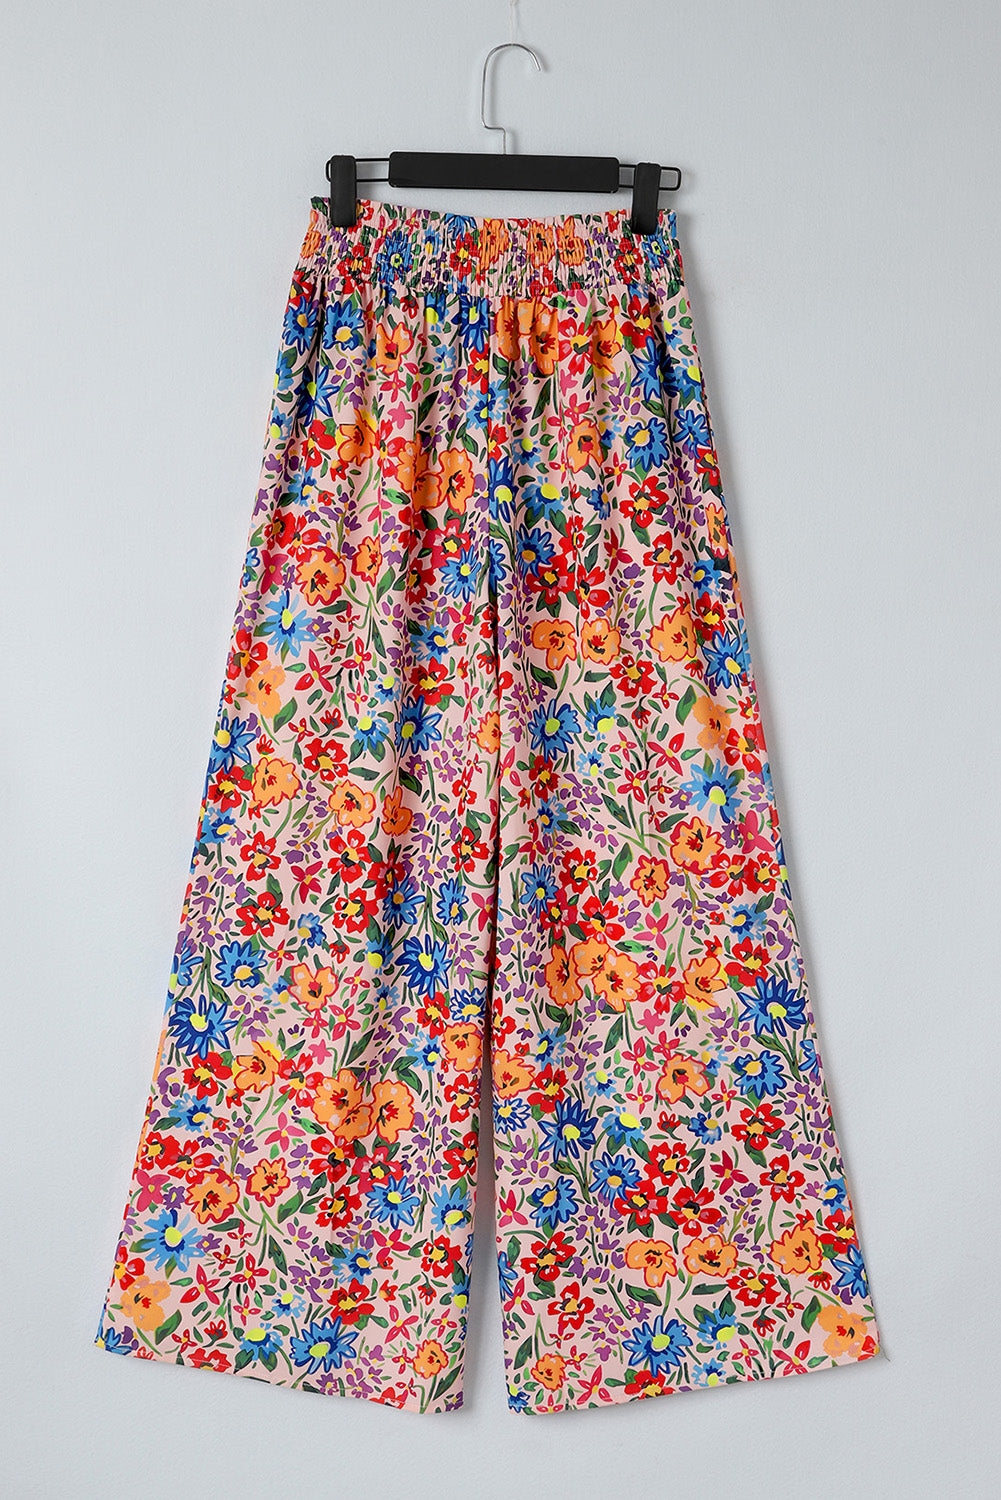 Pantalon oversize multicolore à poches et imprimé floral, jambe large